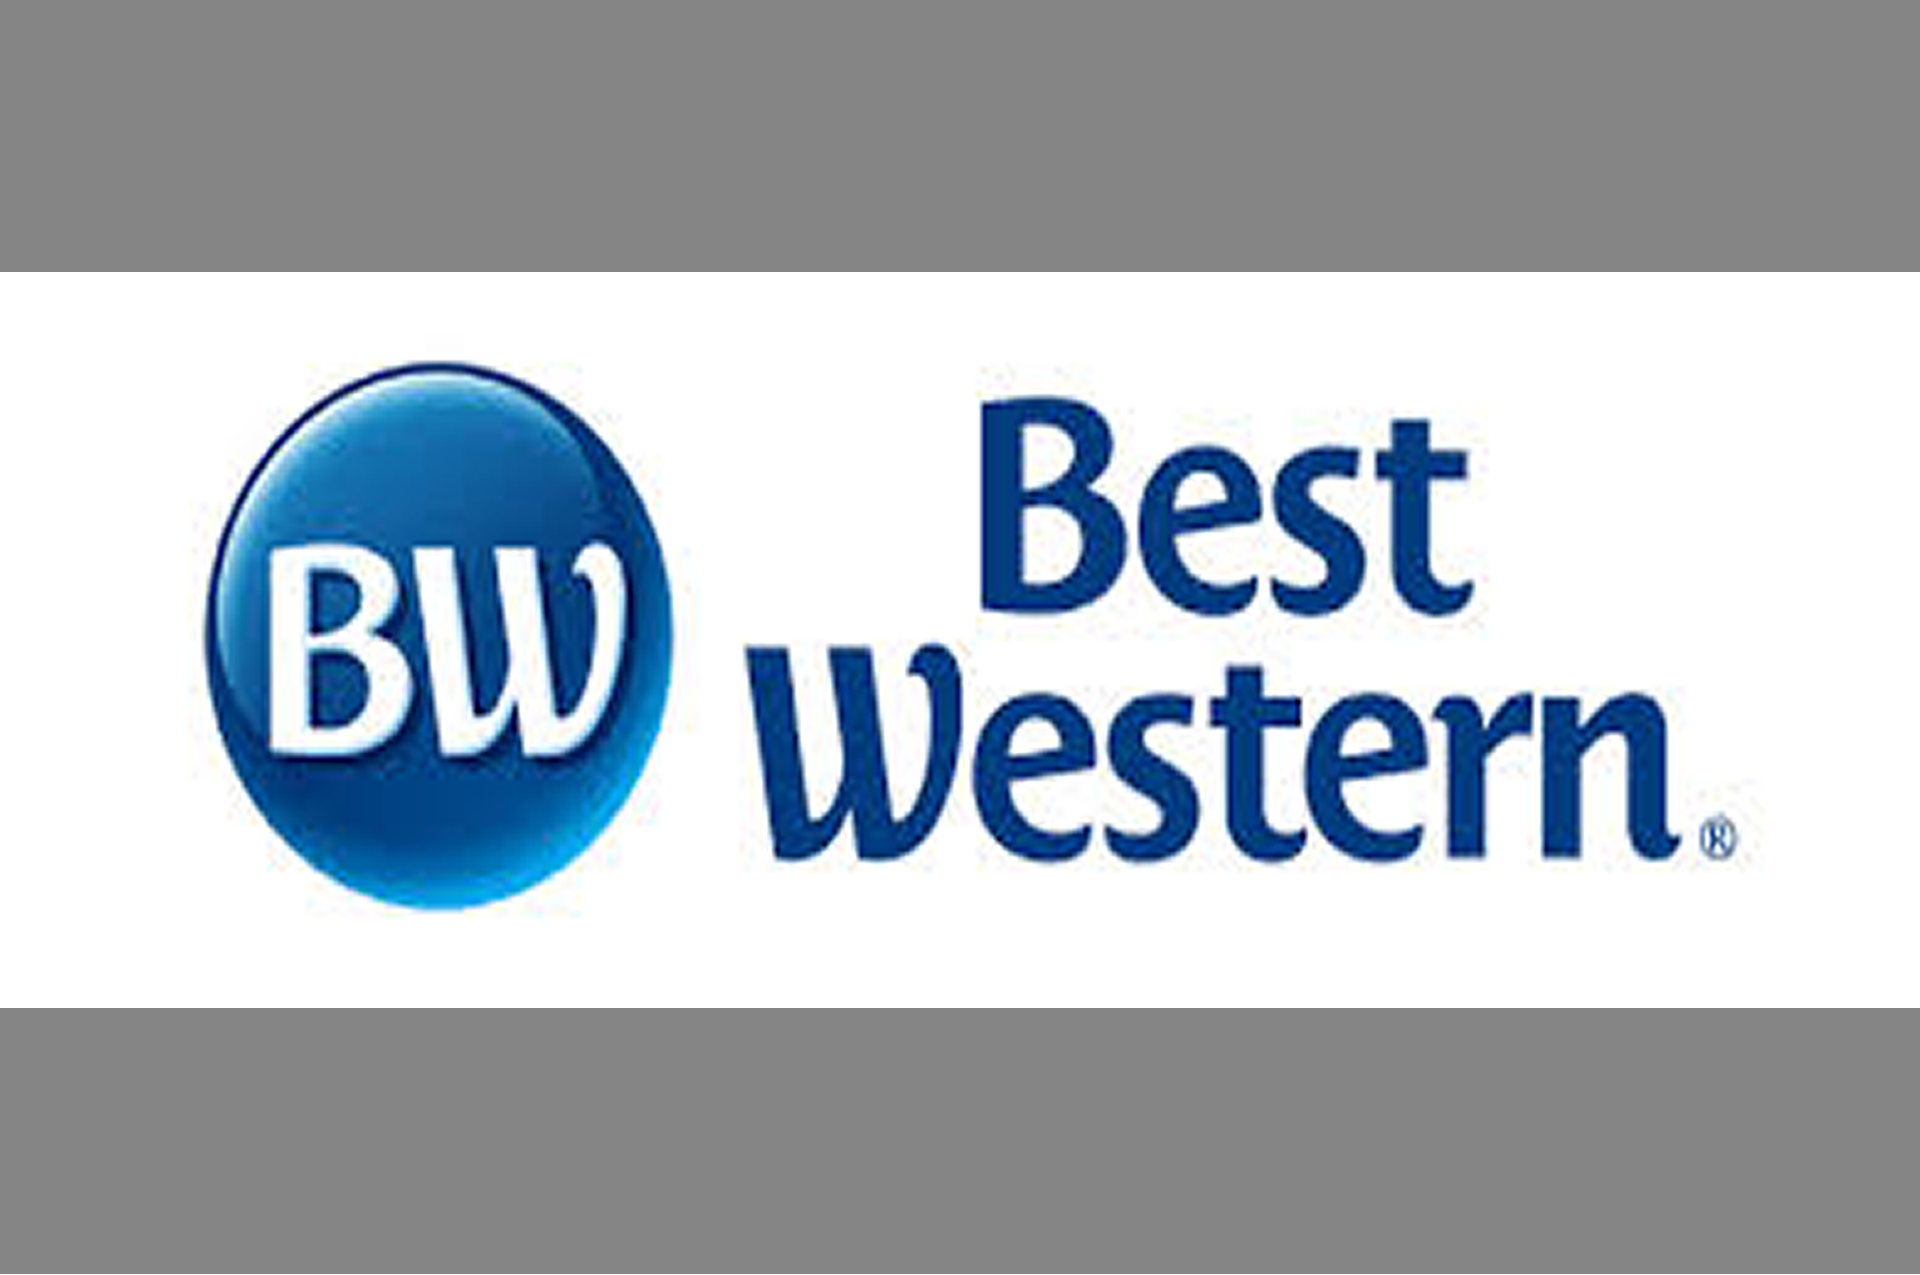 Best Western Hotel In New Brunswick For Sale